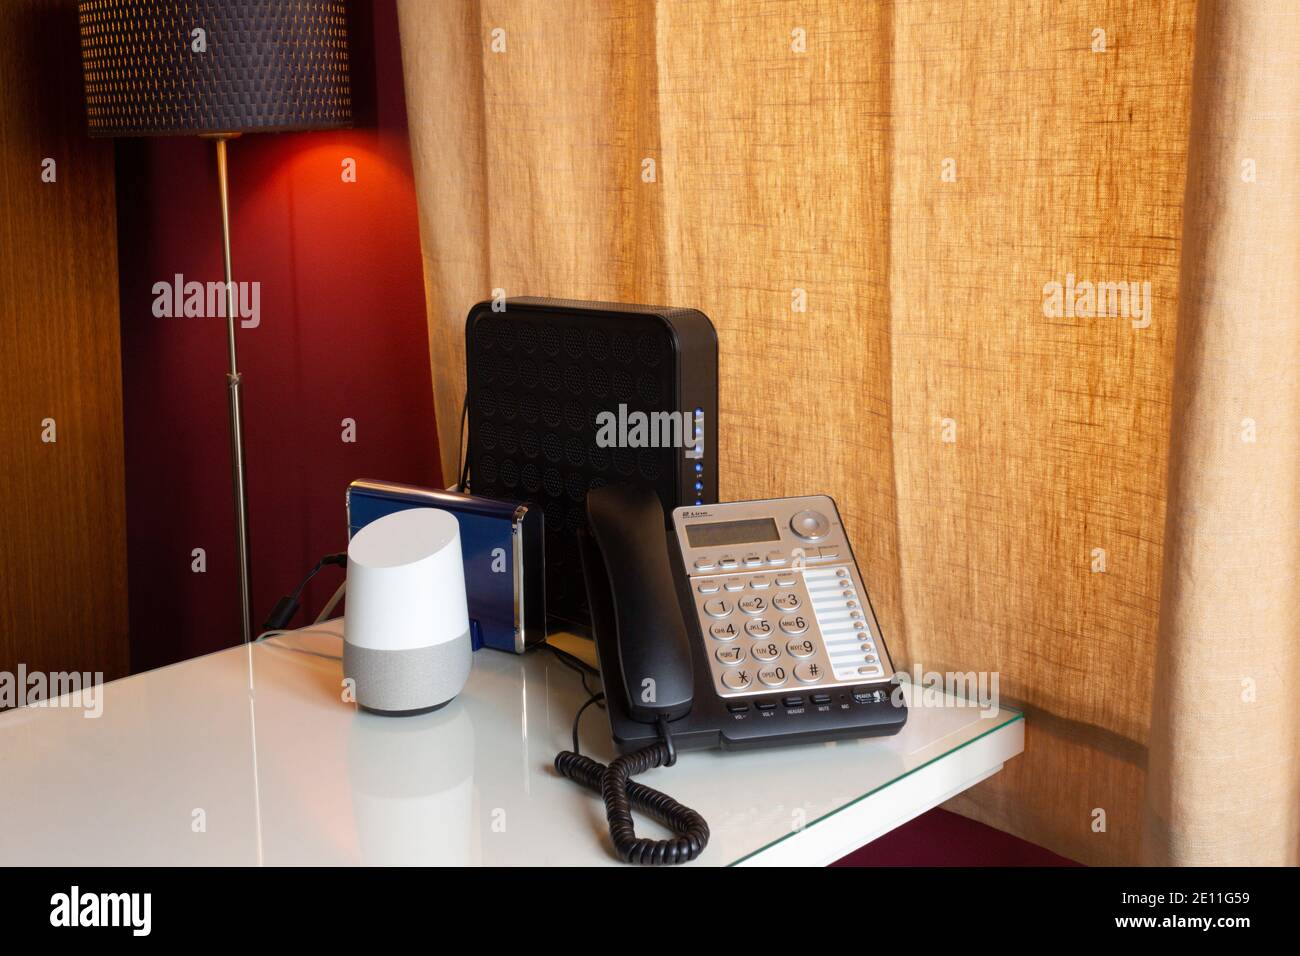 bureau à domicile équipé d'un assistant intelligent virtuel activé par la voix, d'un téléphone fixe et de deux routeurs sur un bureau blanc avec une lampe lumineuse Banque D'Images